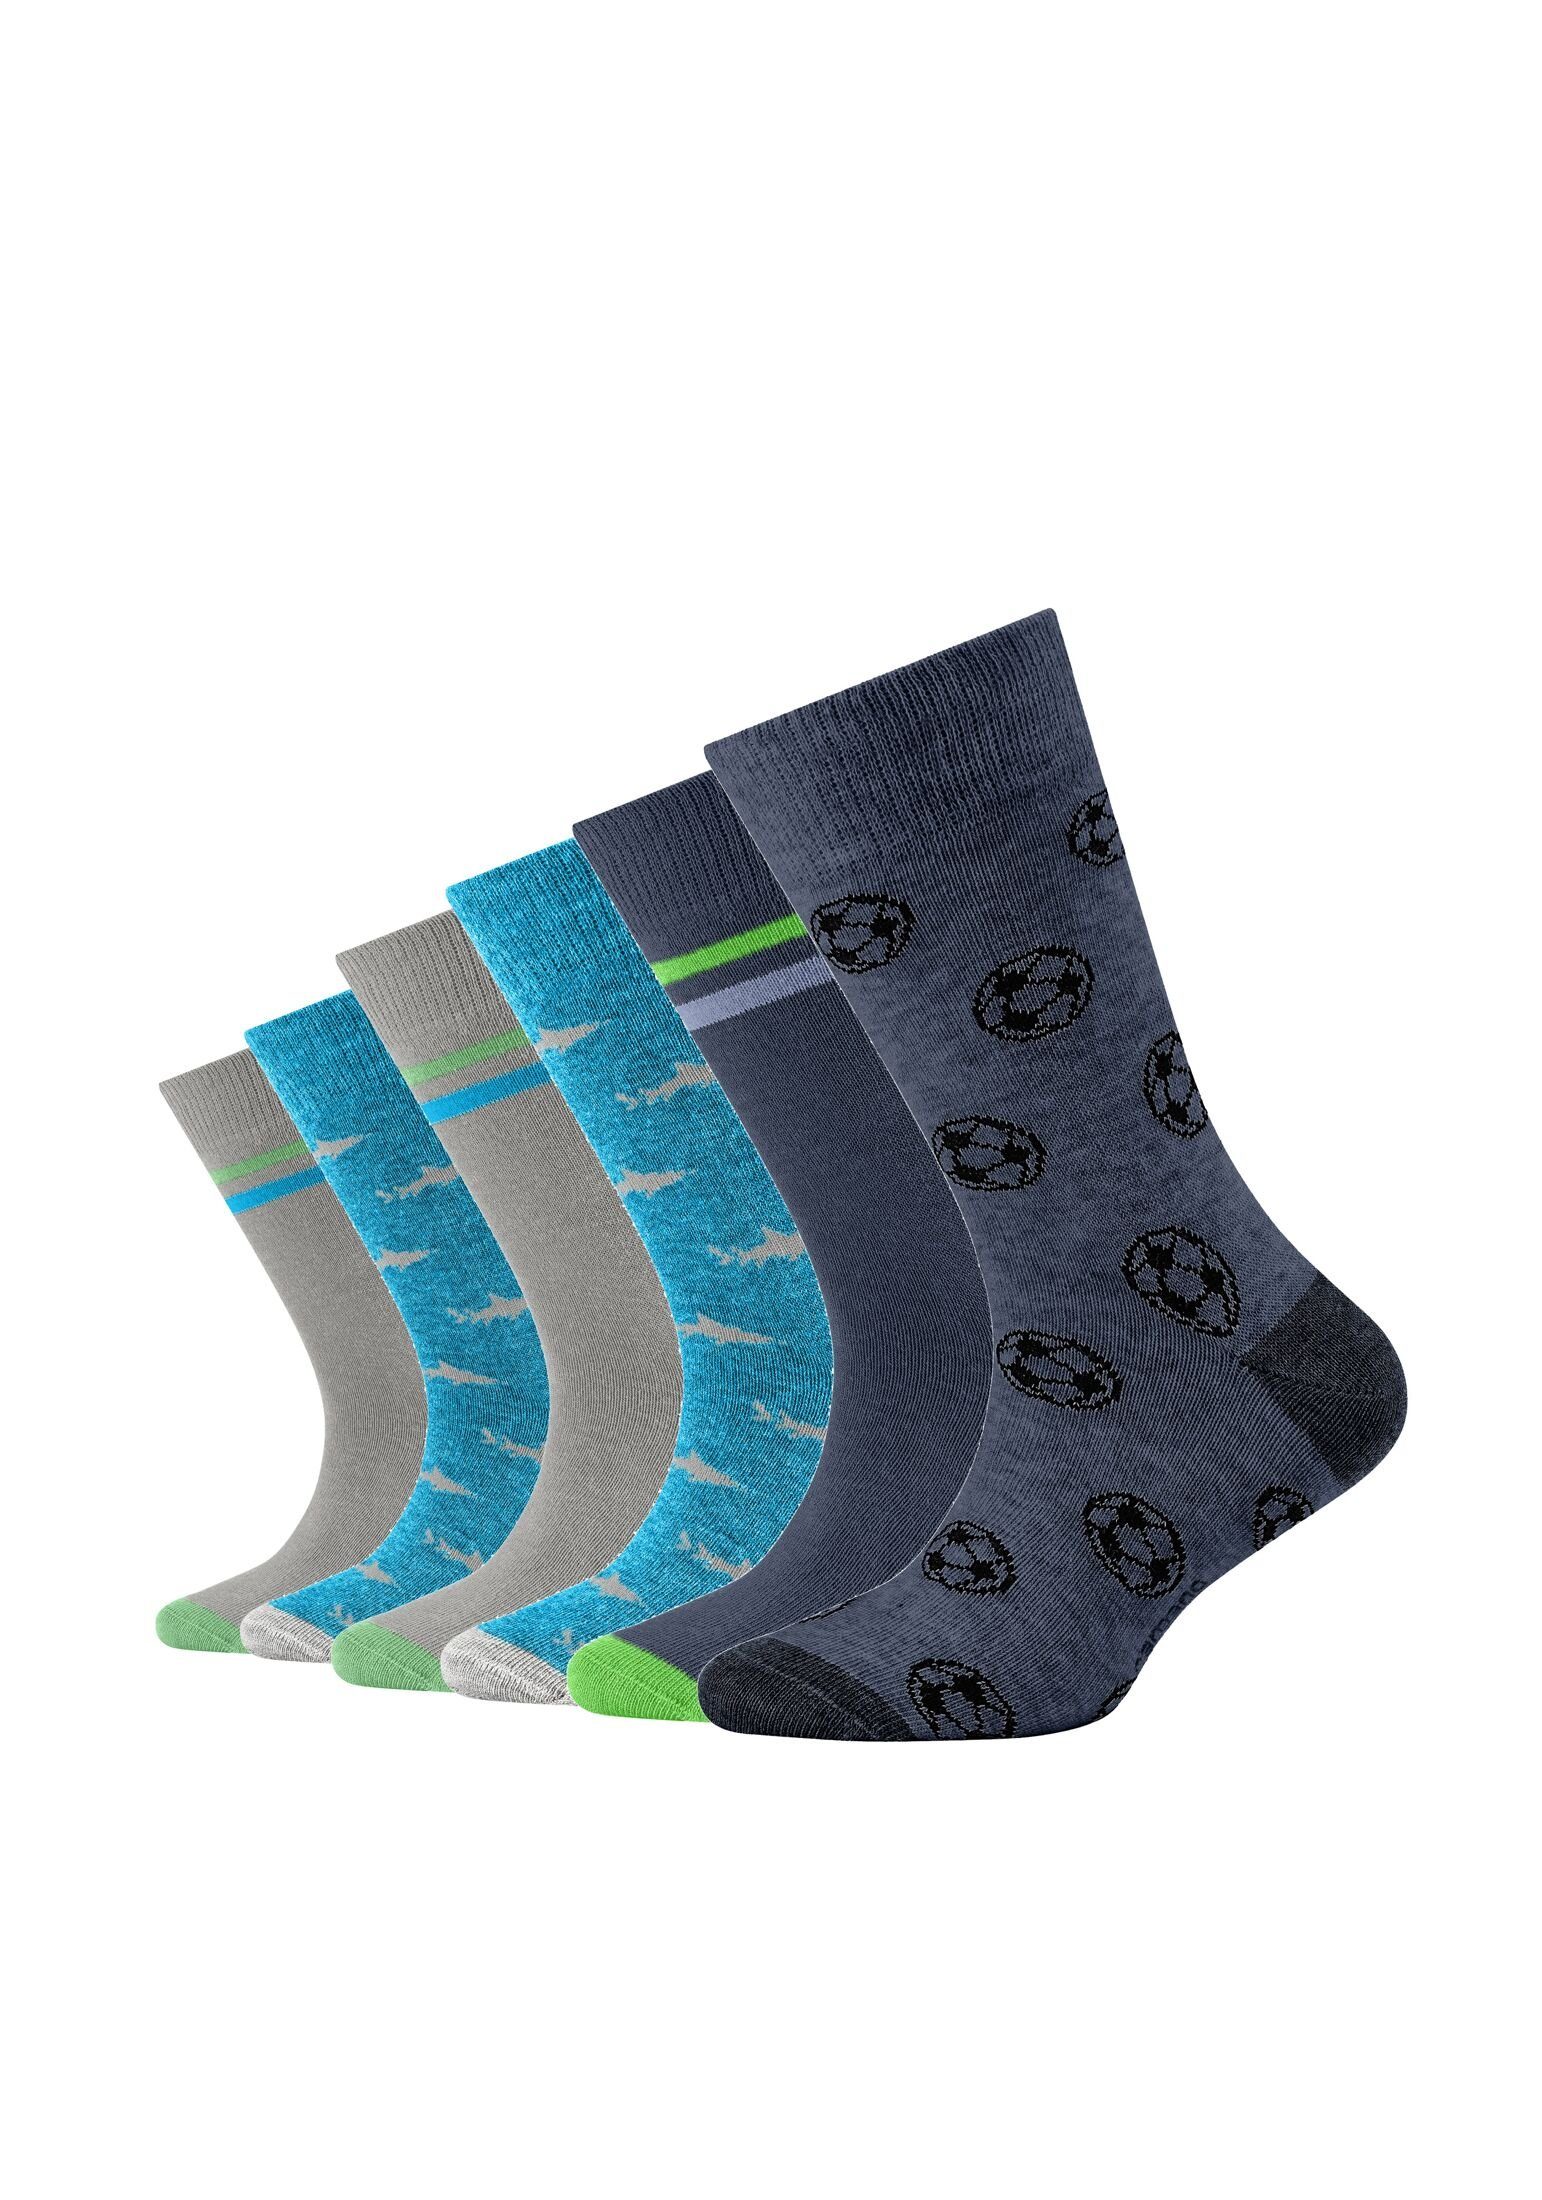 Camano Socken Socken 6er Pack turquoise